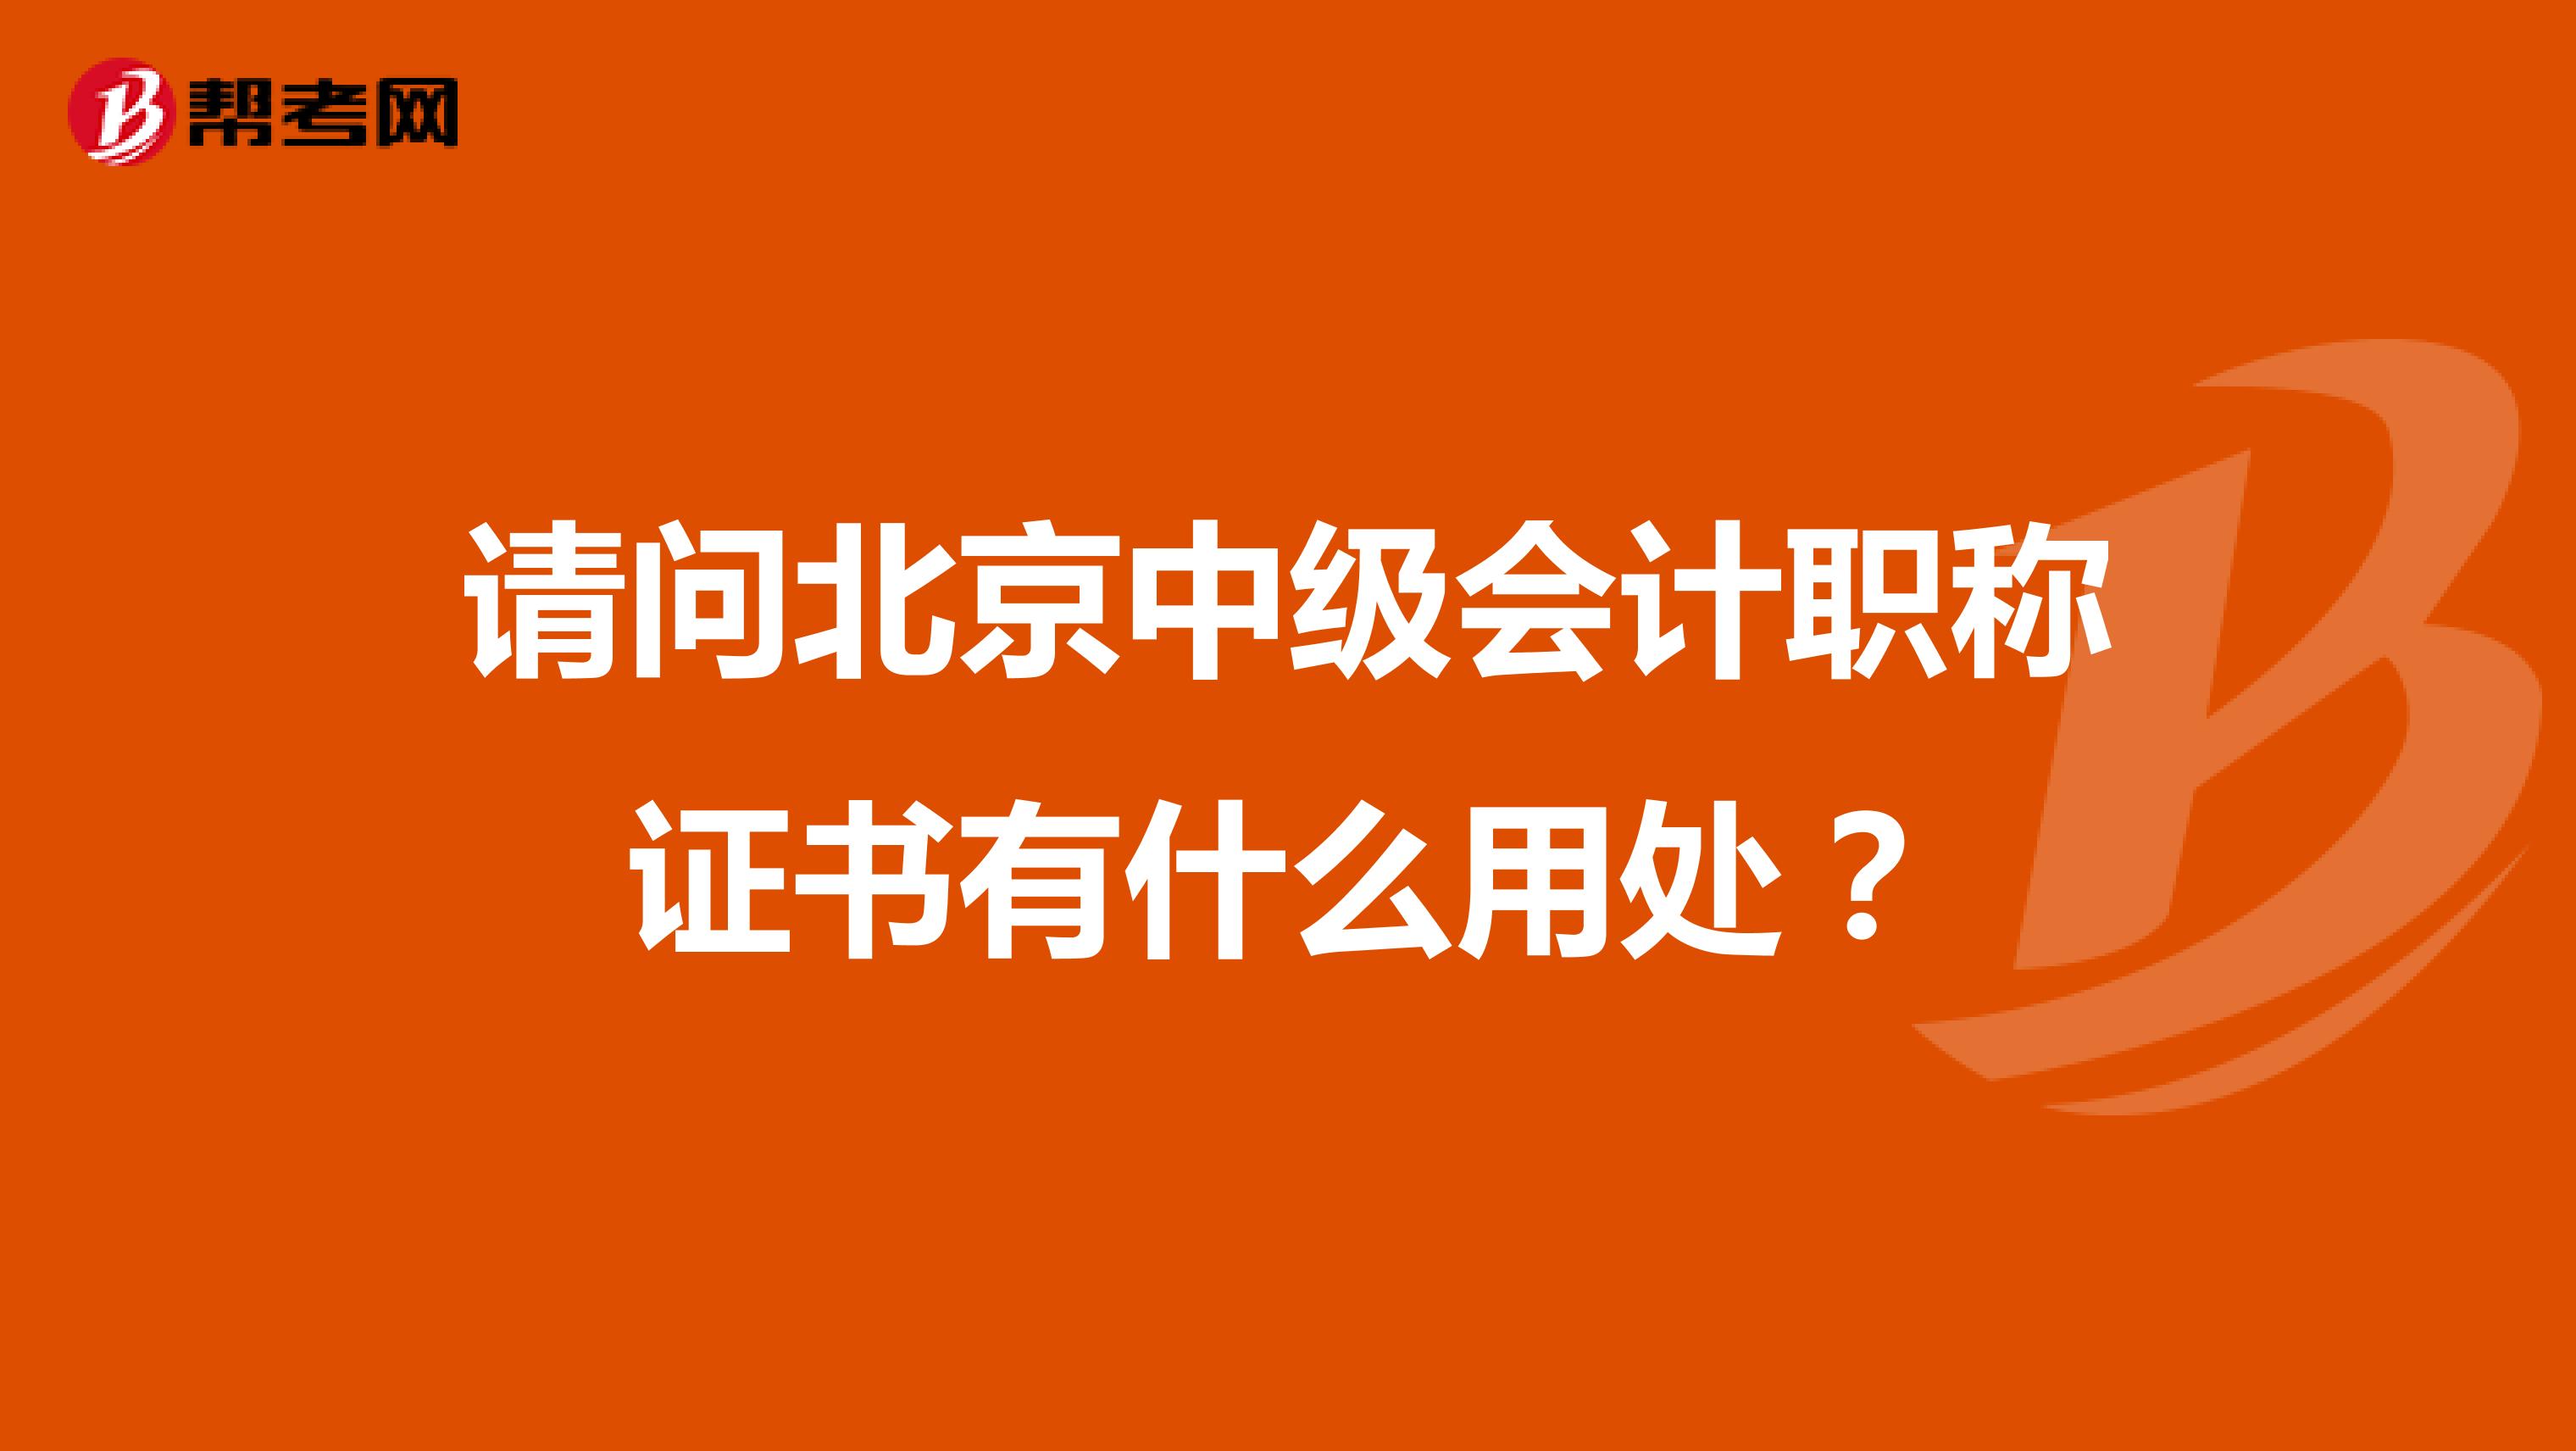 请问北京中级会计职称证书有什么用处？